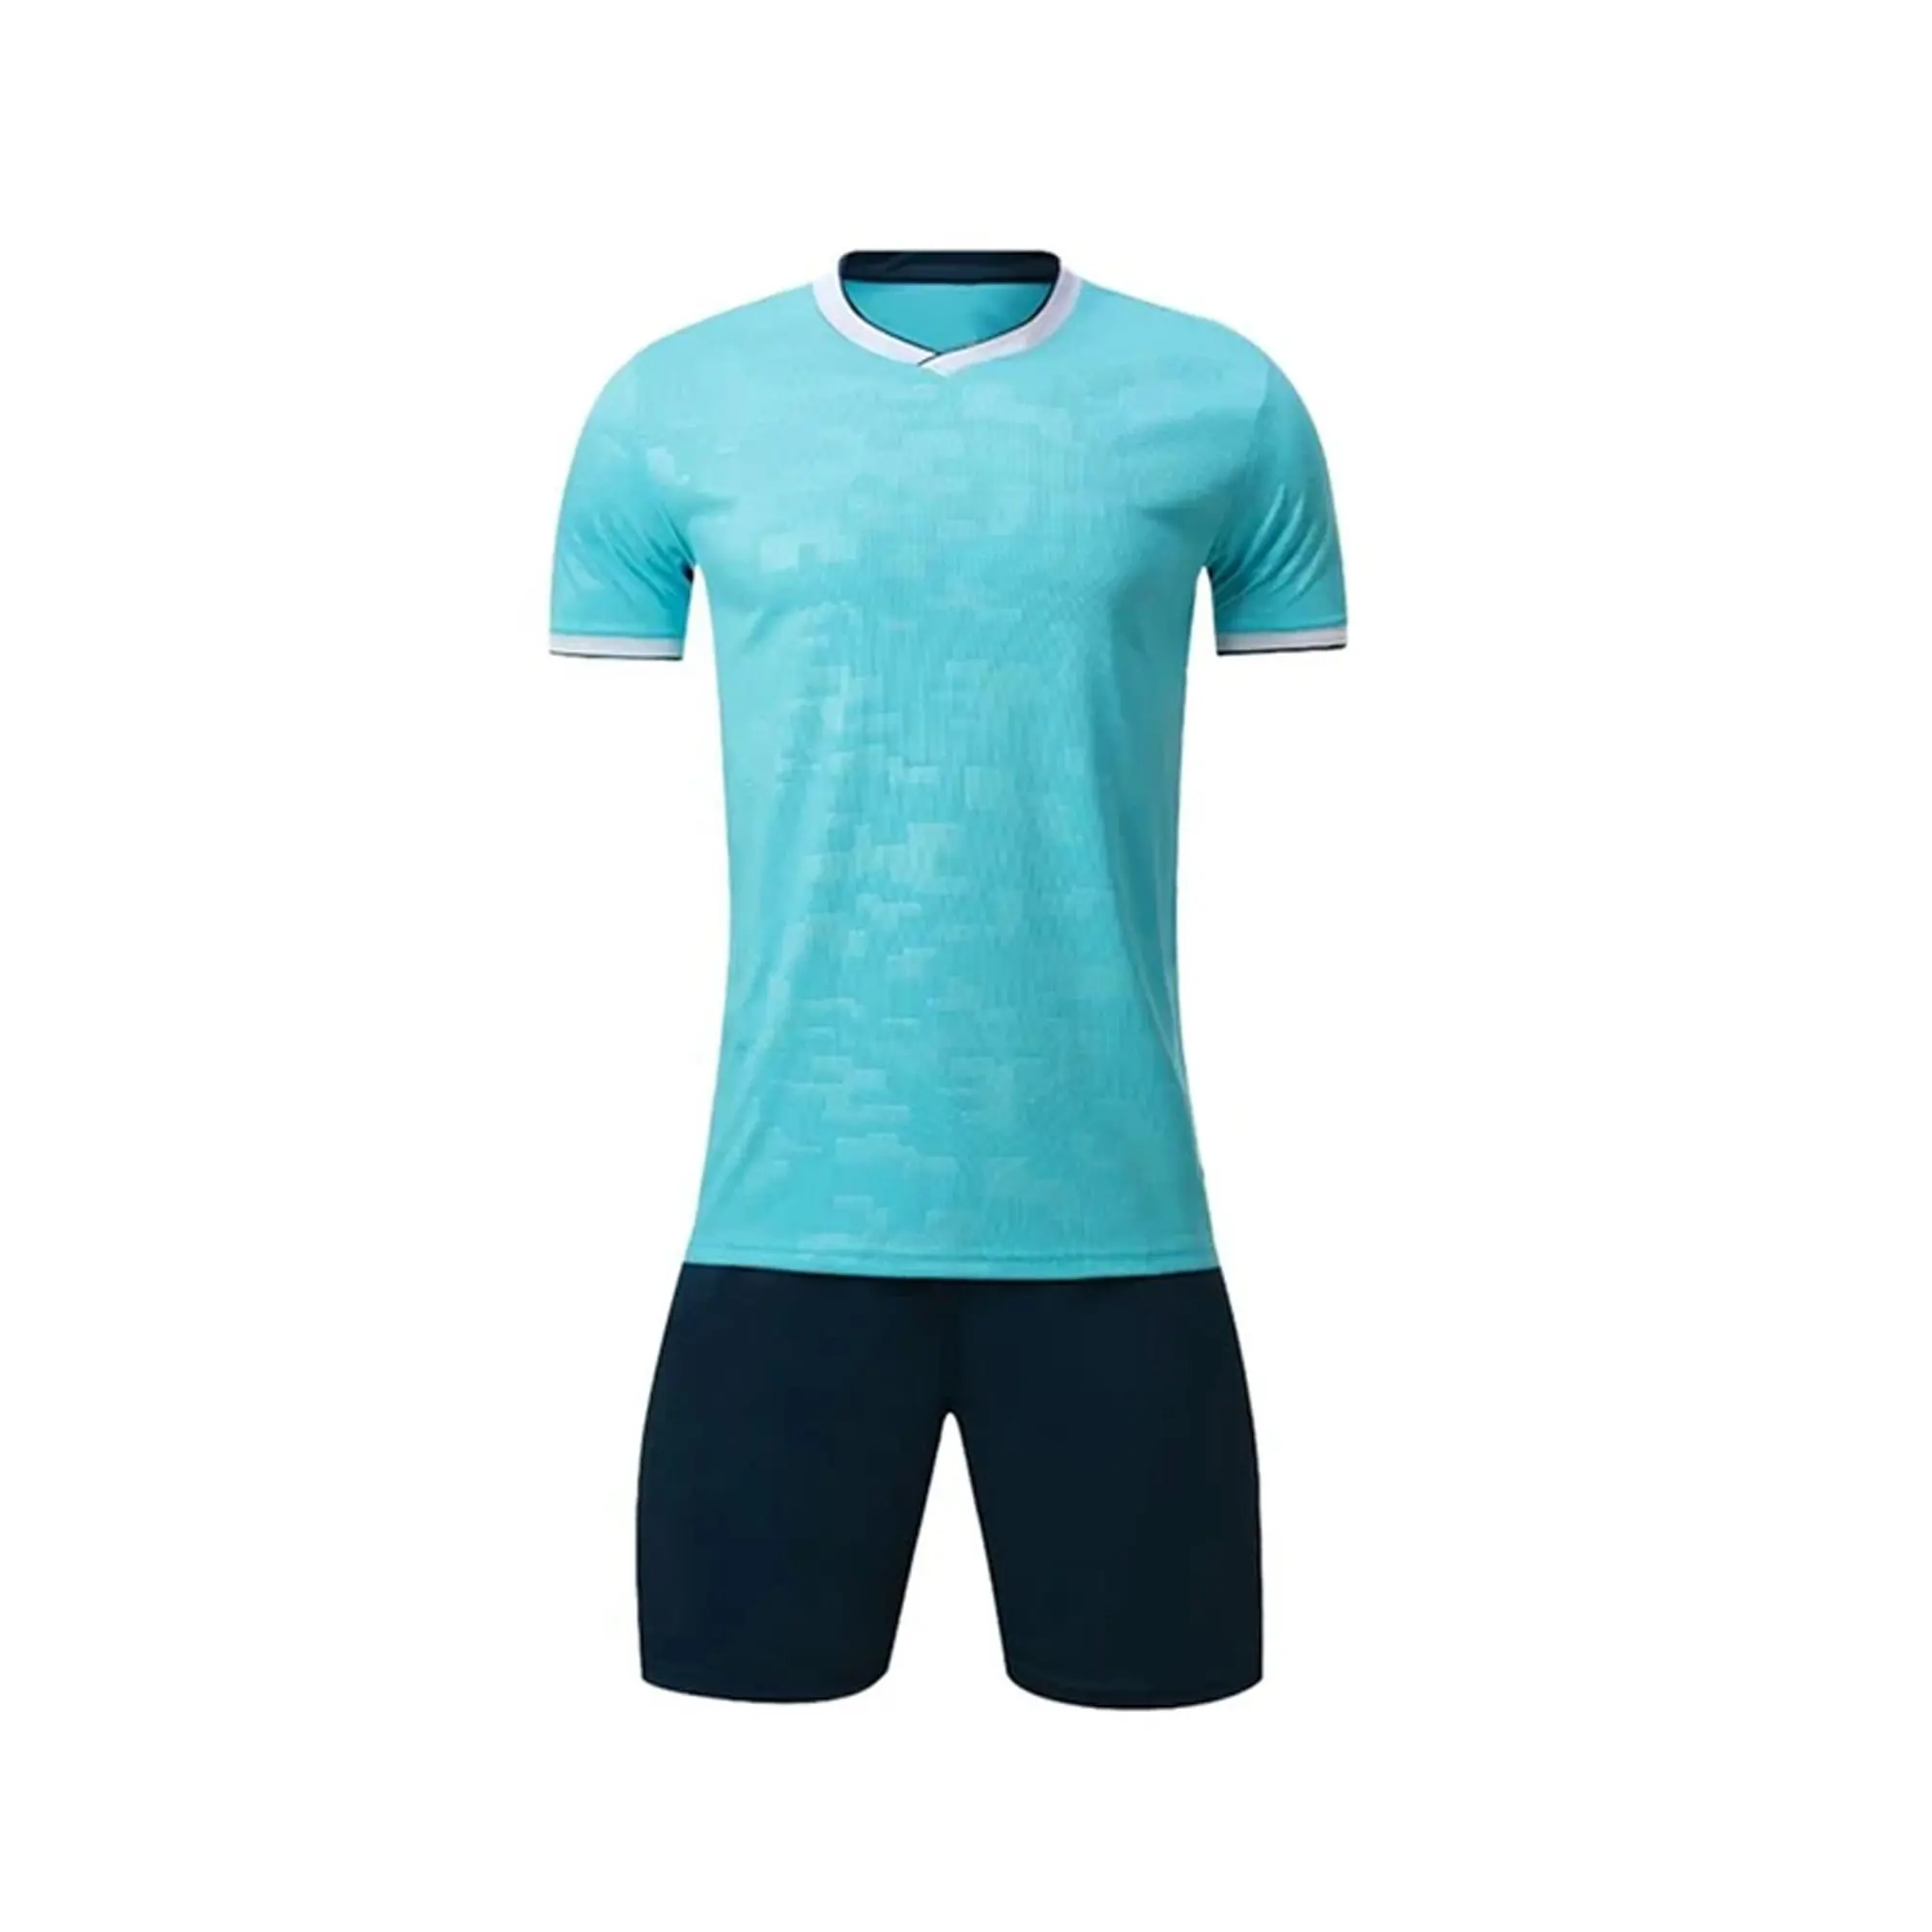 Uniformes de fútbol personalizados a granel, Camiseta deportiva, polo, número y nombre, venta al por mayor, 2021